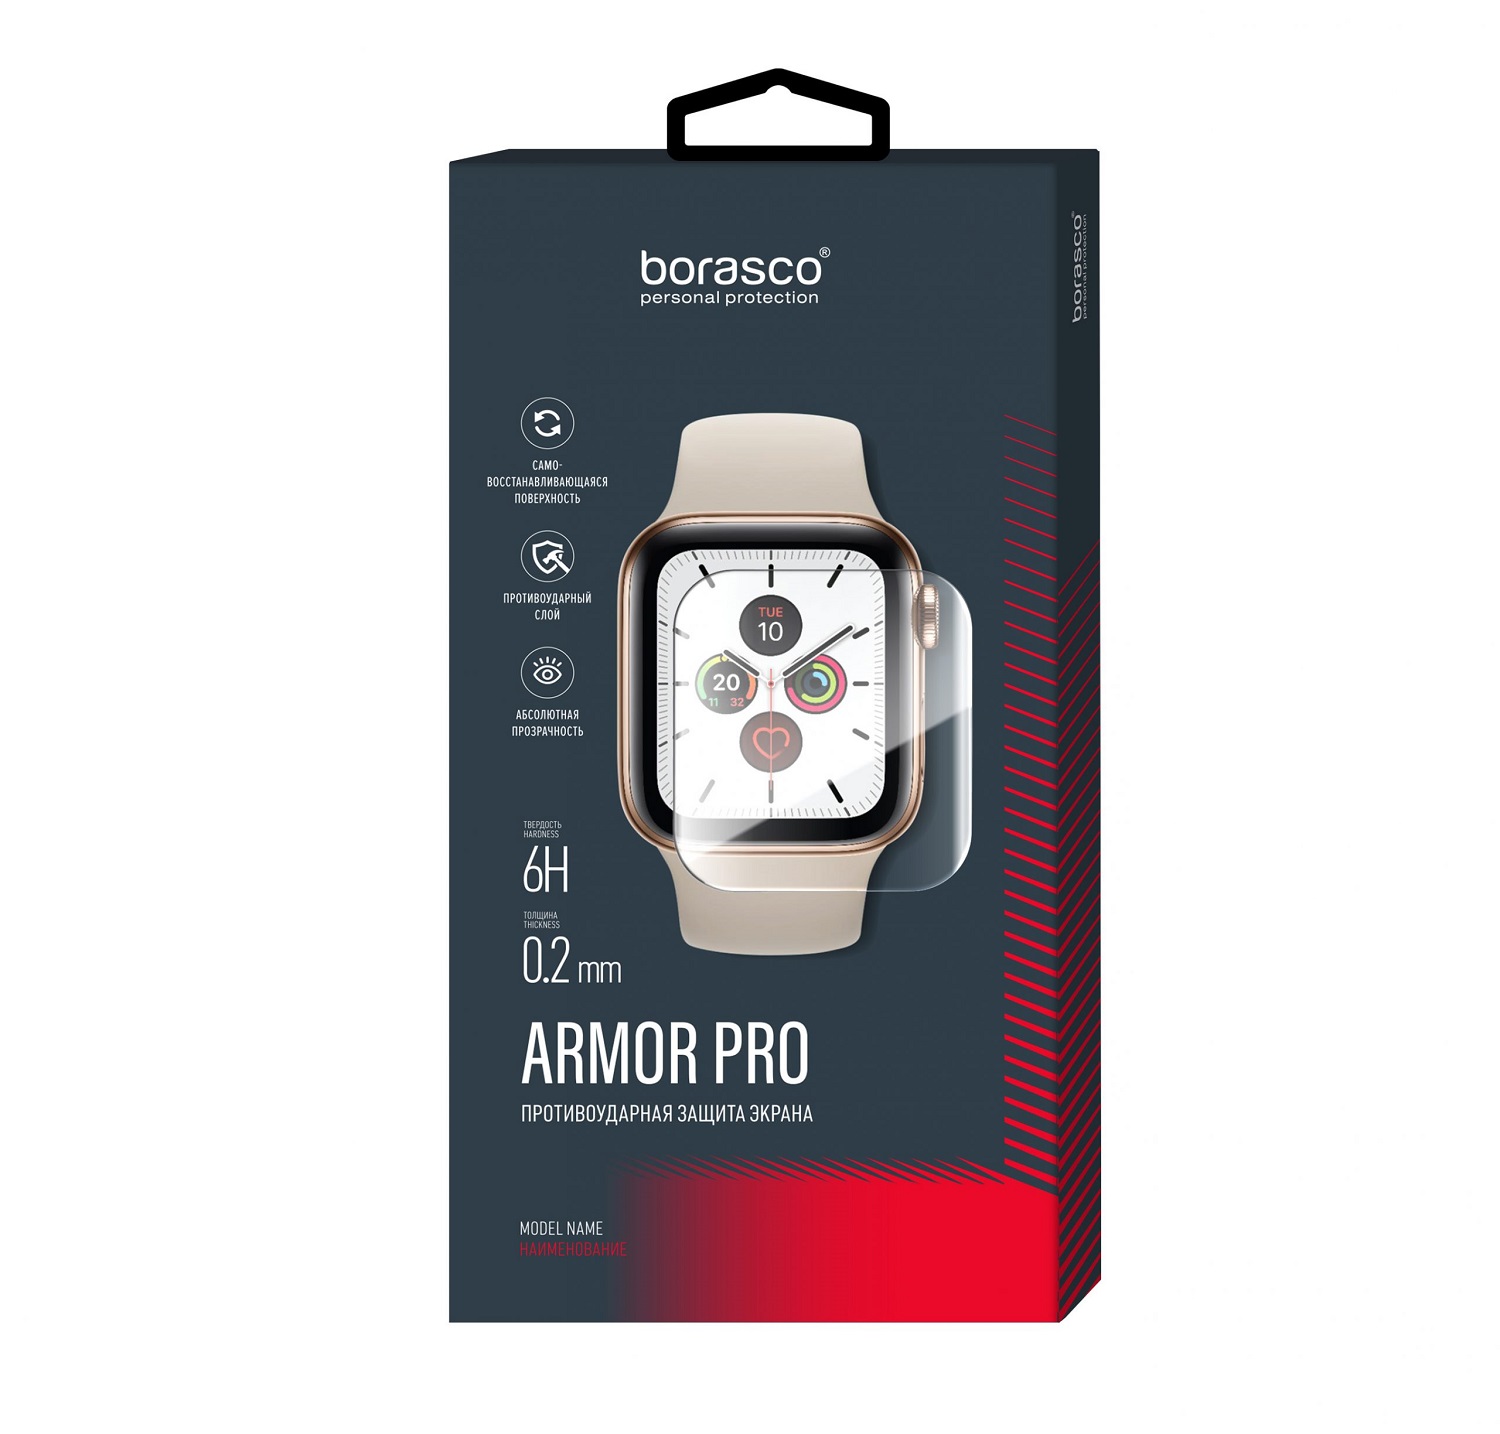 Защита экрана BoraSCO Armor Pro для Huawei Watch fit защита экрана borasco armor pro для aimoto pro life